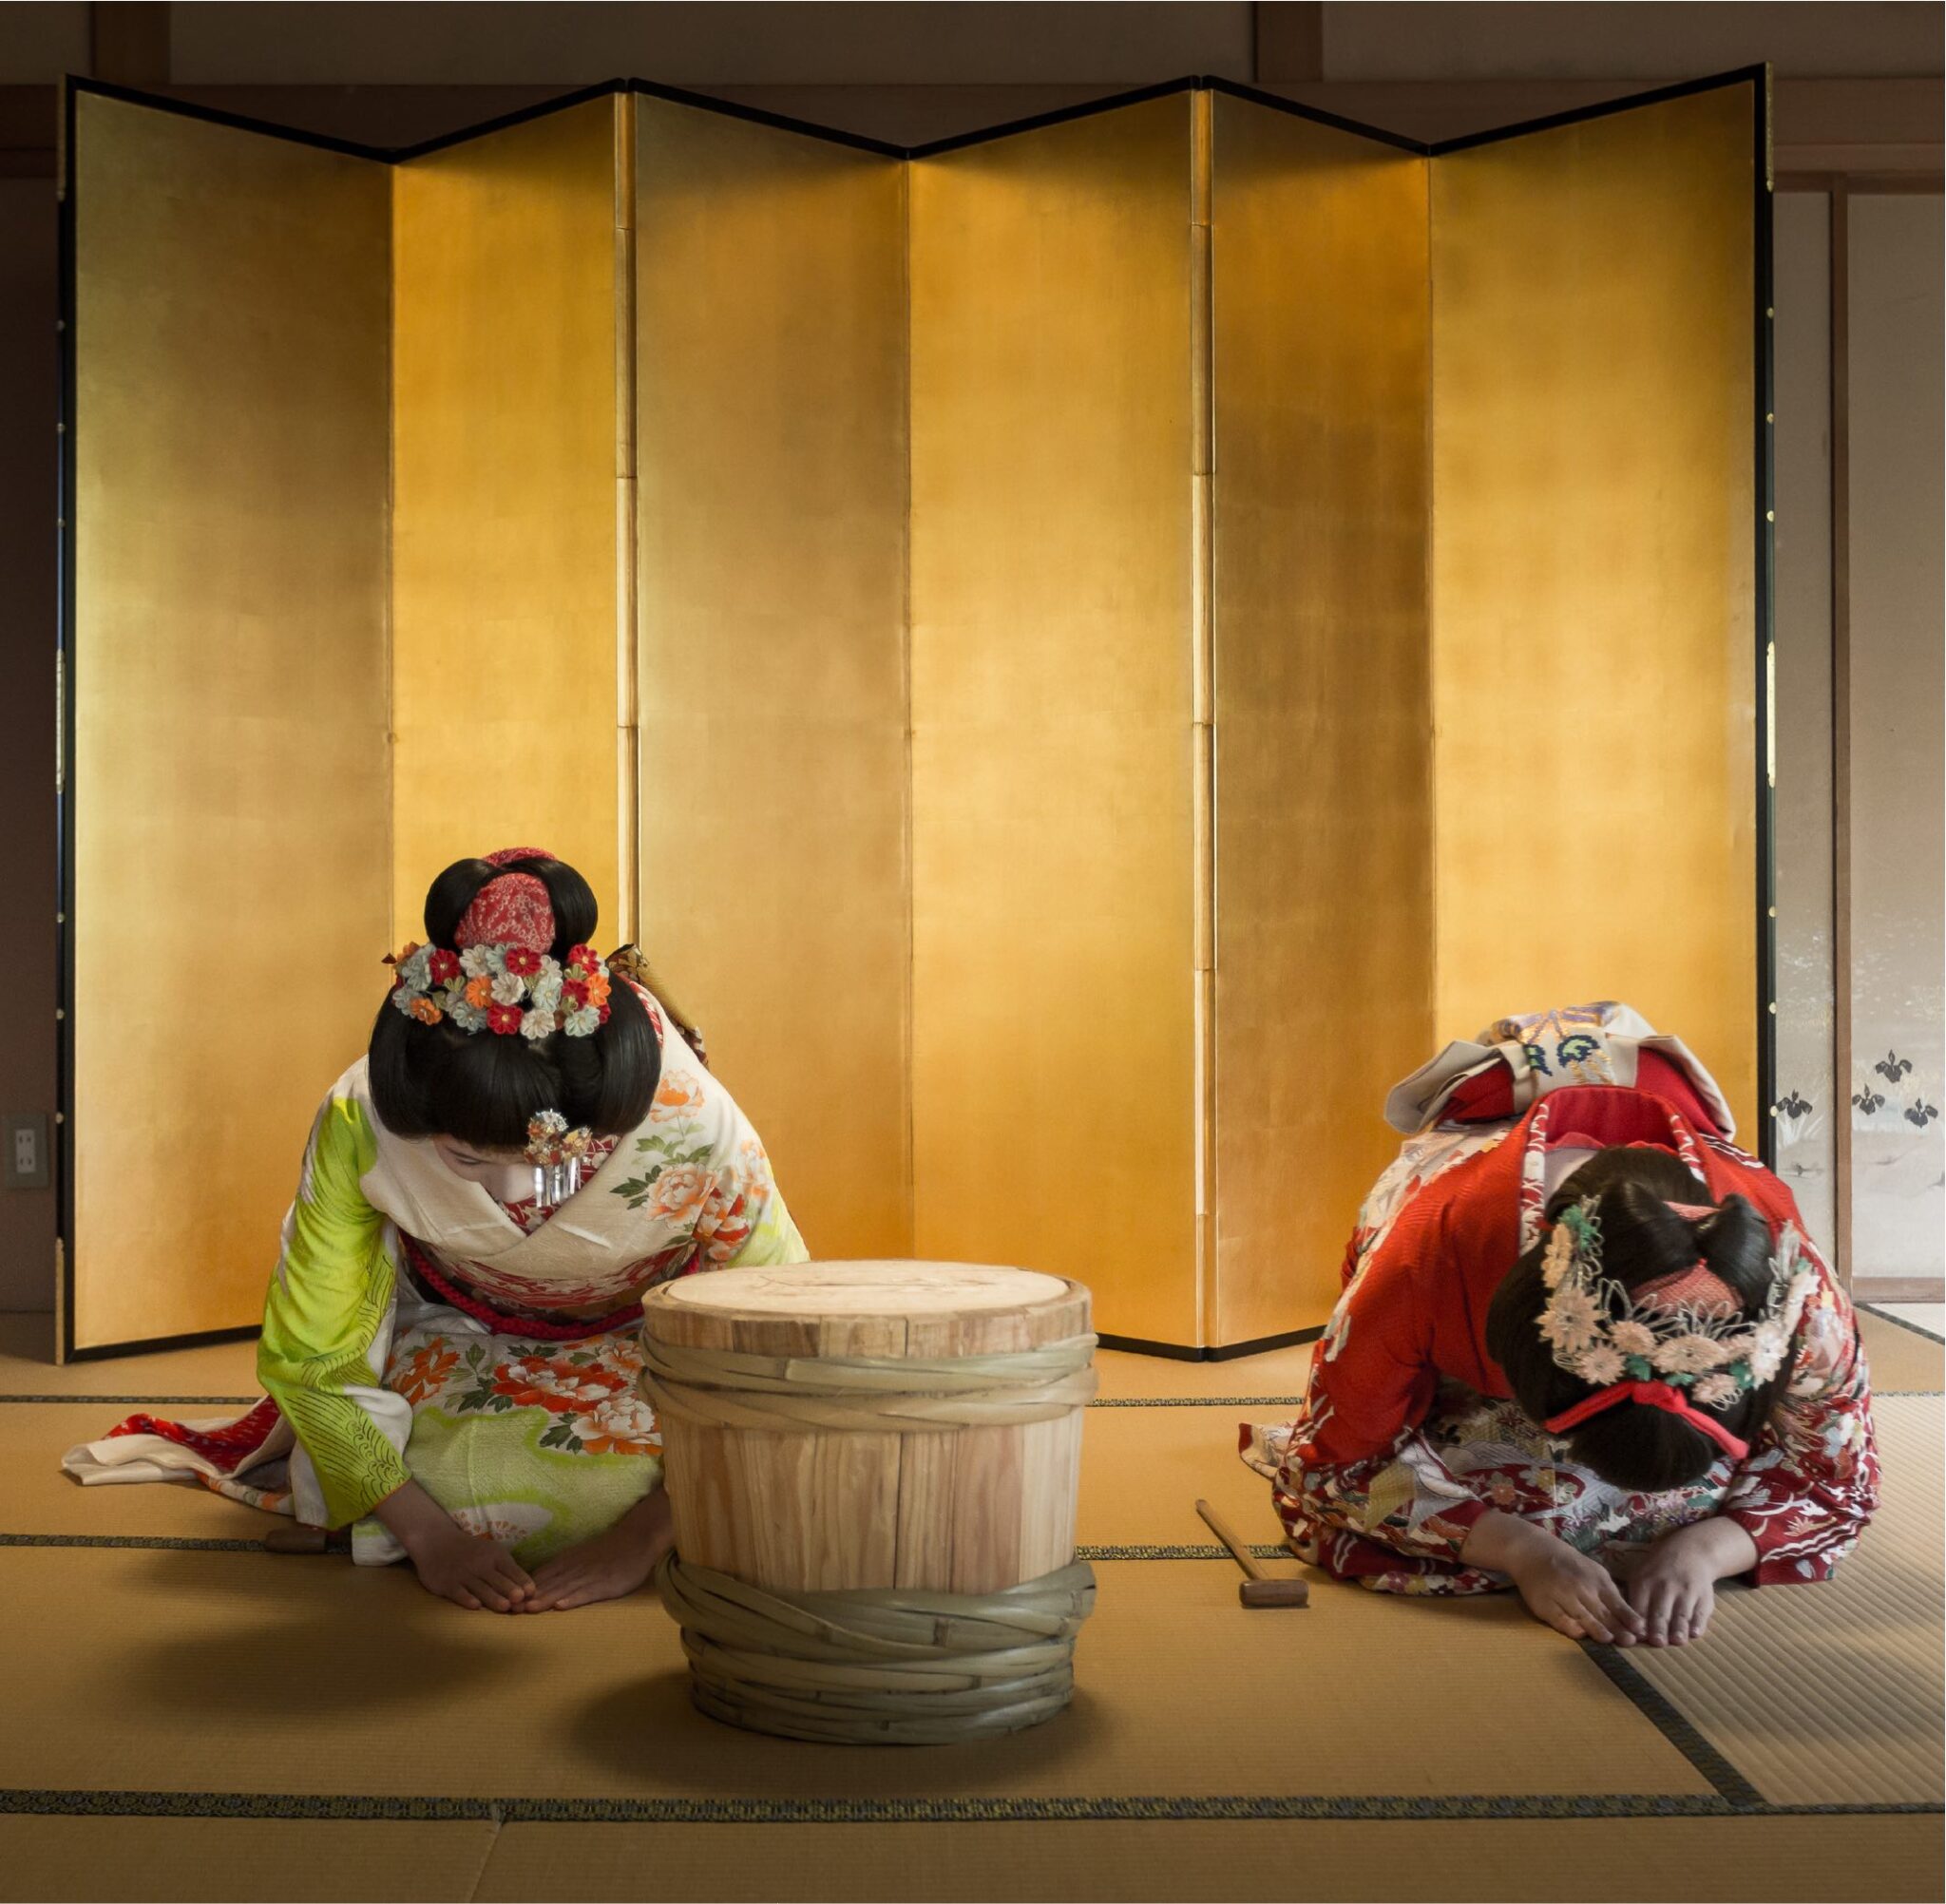 ものがたりホテル。 日本の伝統文化を体験できるテーマホテルで観光需要を盛り上げていく。横綱ホテル、百蔵ホテルに続く第三弾。ホテル『舞妓物語』！